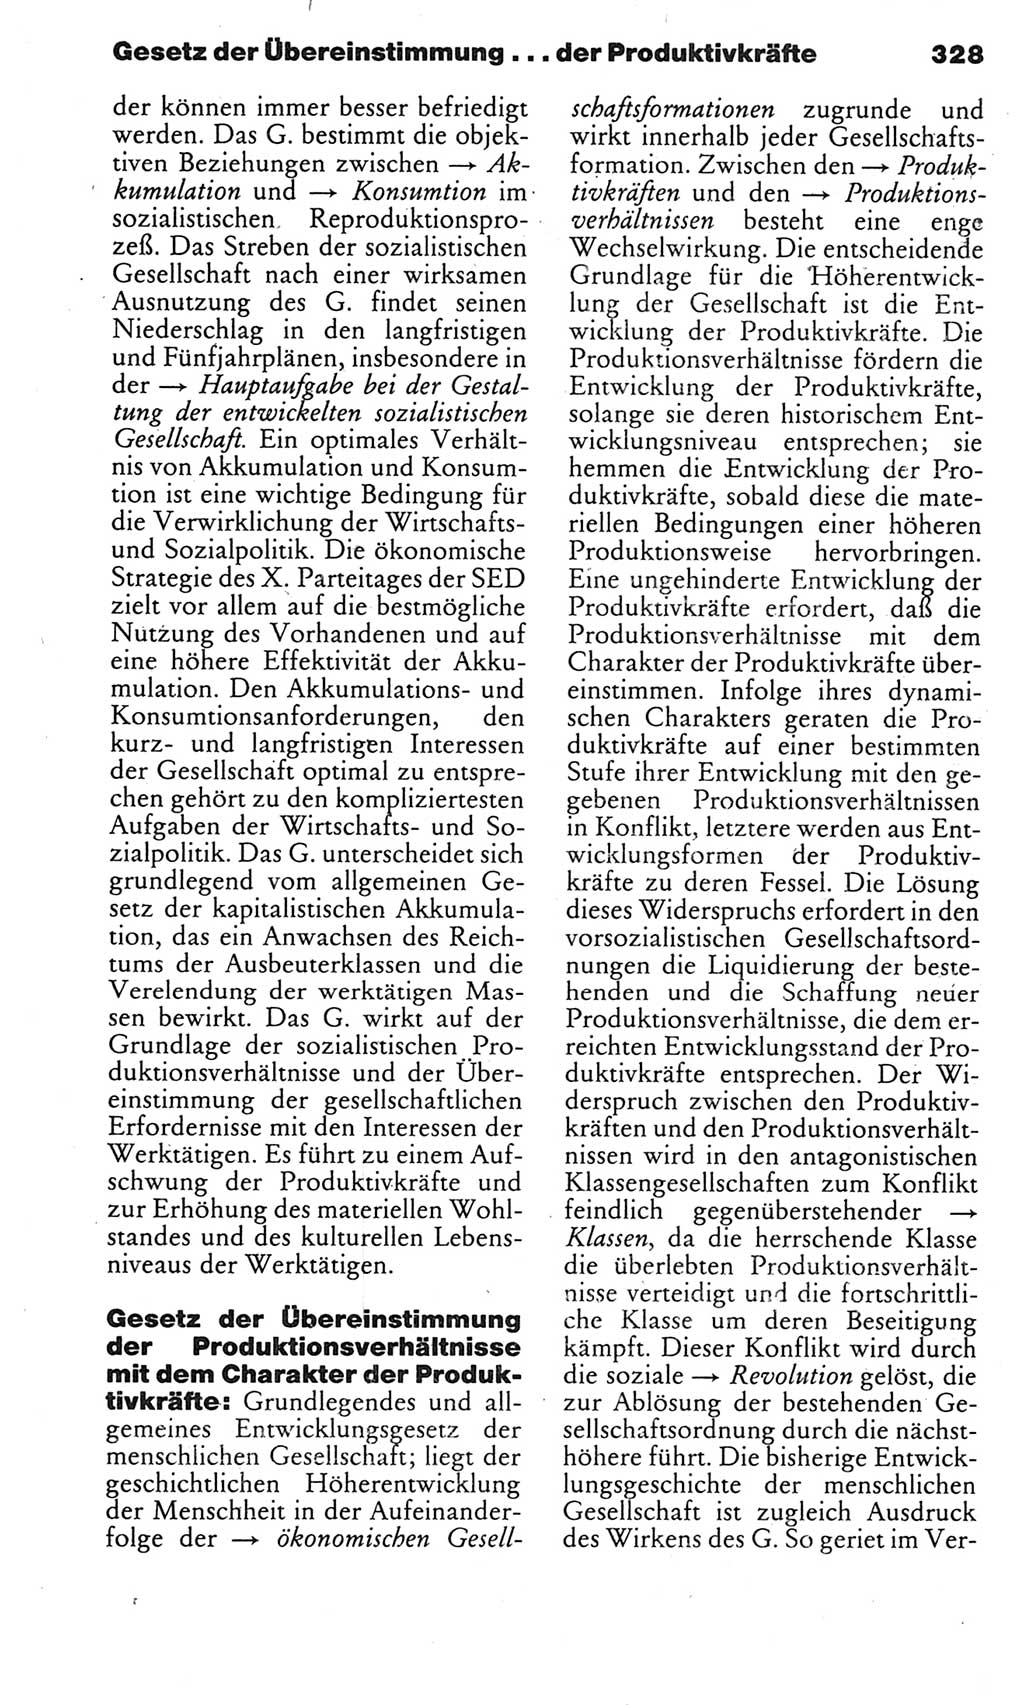 Kleines politisches Wörterbuch [Deutsche Demokratische Republik (DDR)] 1985, Seite 328 (Kl. pol. Wb. DDR 1985, S. 328)